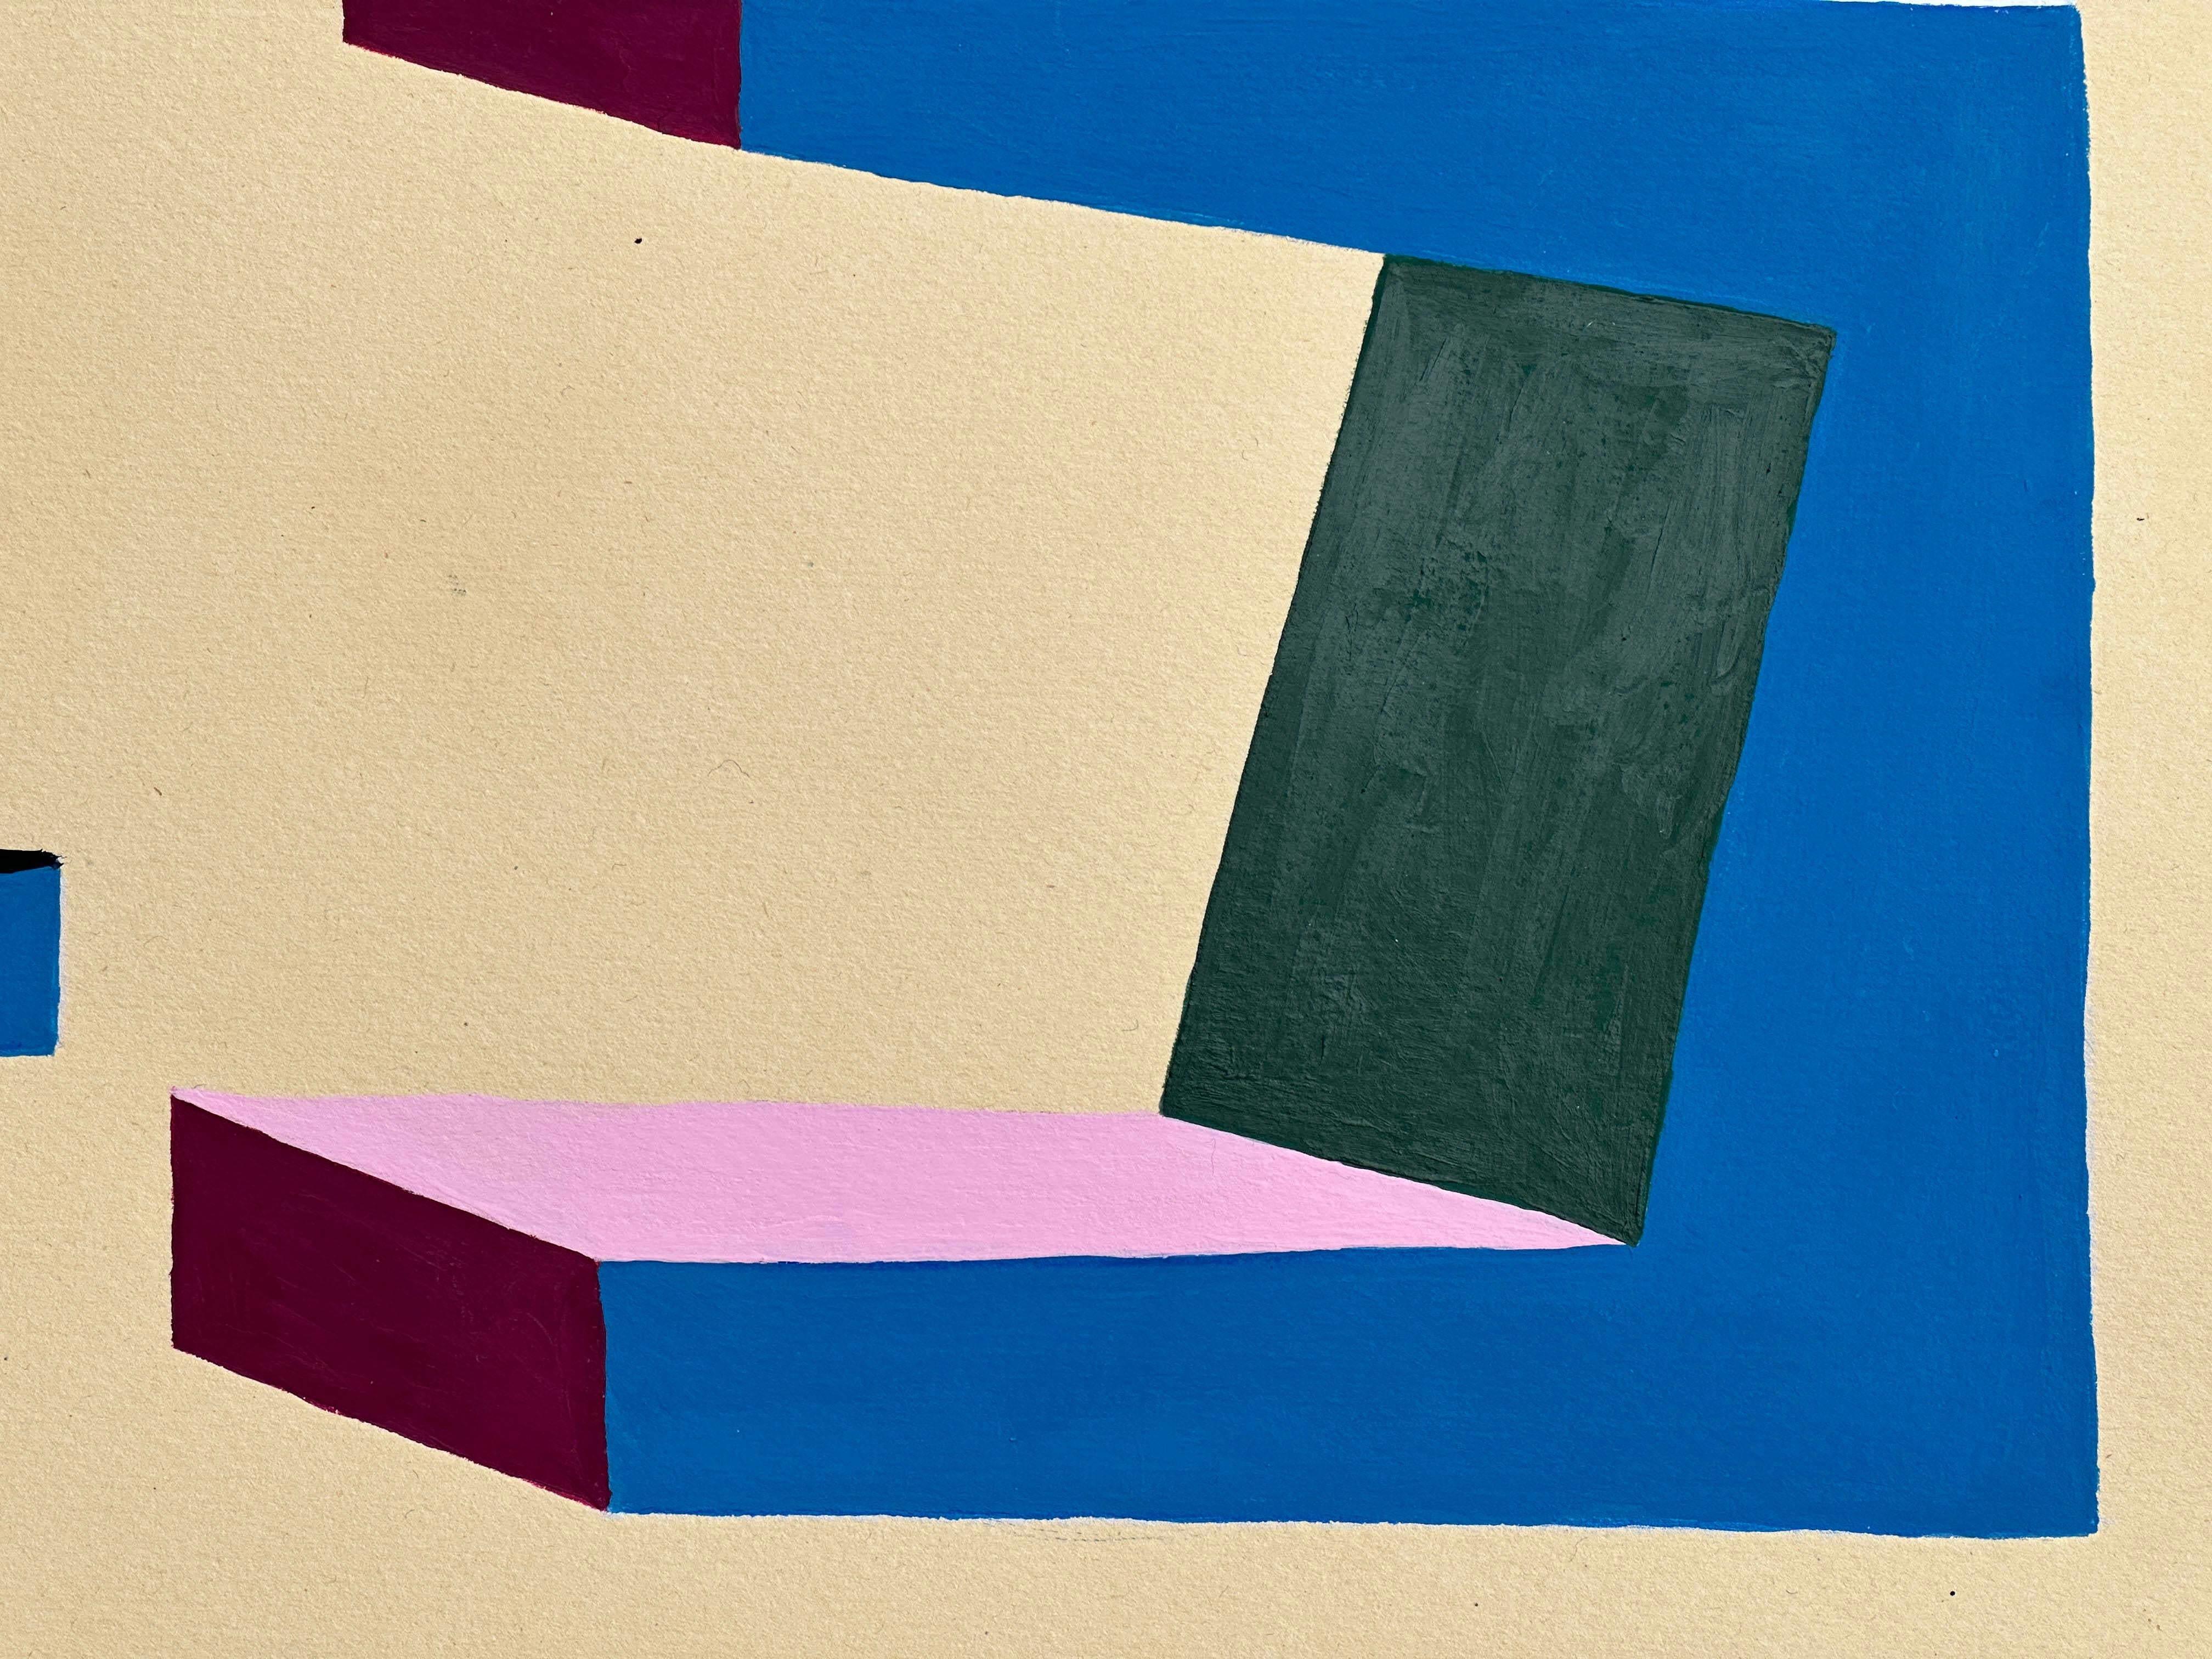 Dieses geometrische abstrakte Gemälde auf Papier wurde 2023 von Amanda Andersen geschaffen und gehört zu einer Serie von neun minimalistischen Kunstwerken, deren visuelle Einfachheit vom Brutalismus inspiriert ist.  
Brutalismus; ein Stil, der sich